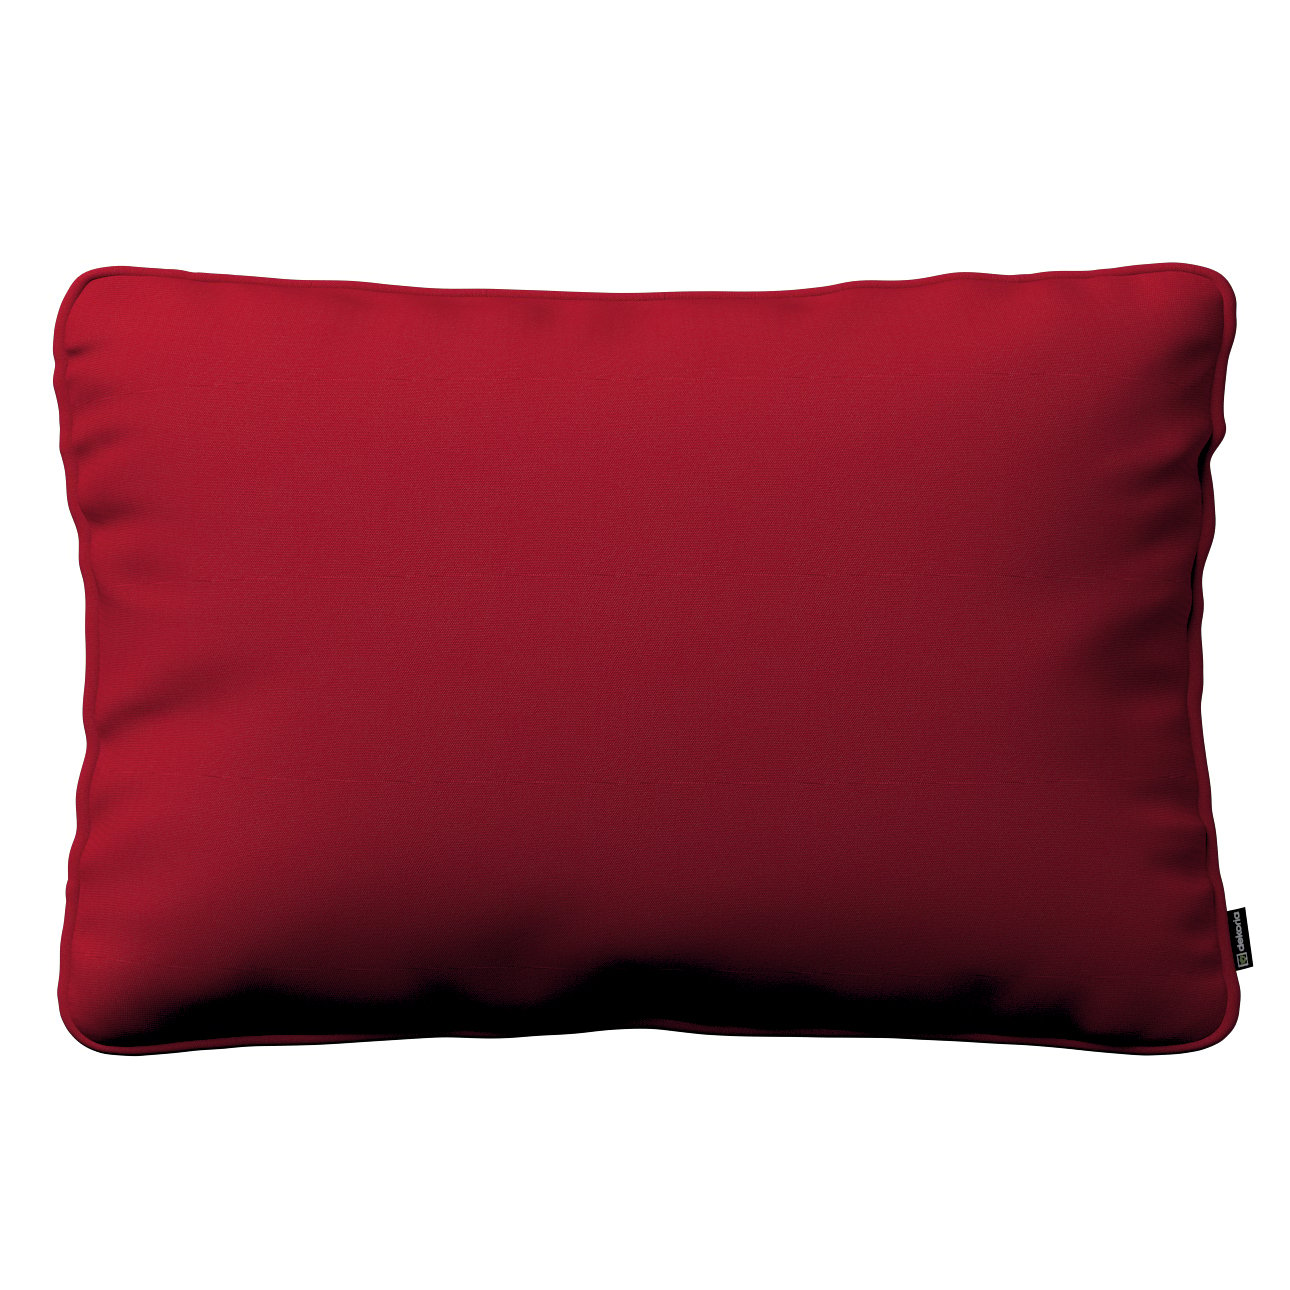 E-shop Dekoria Gabika so šnúrkou, obliečka 60x40cm, červená, 60 x 40 cm, Etna, 705-60